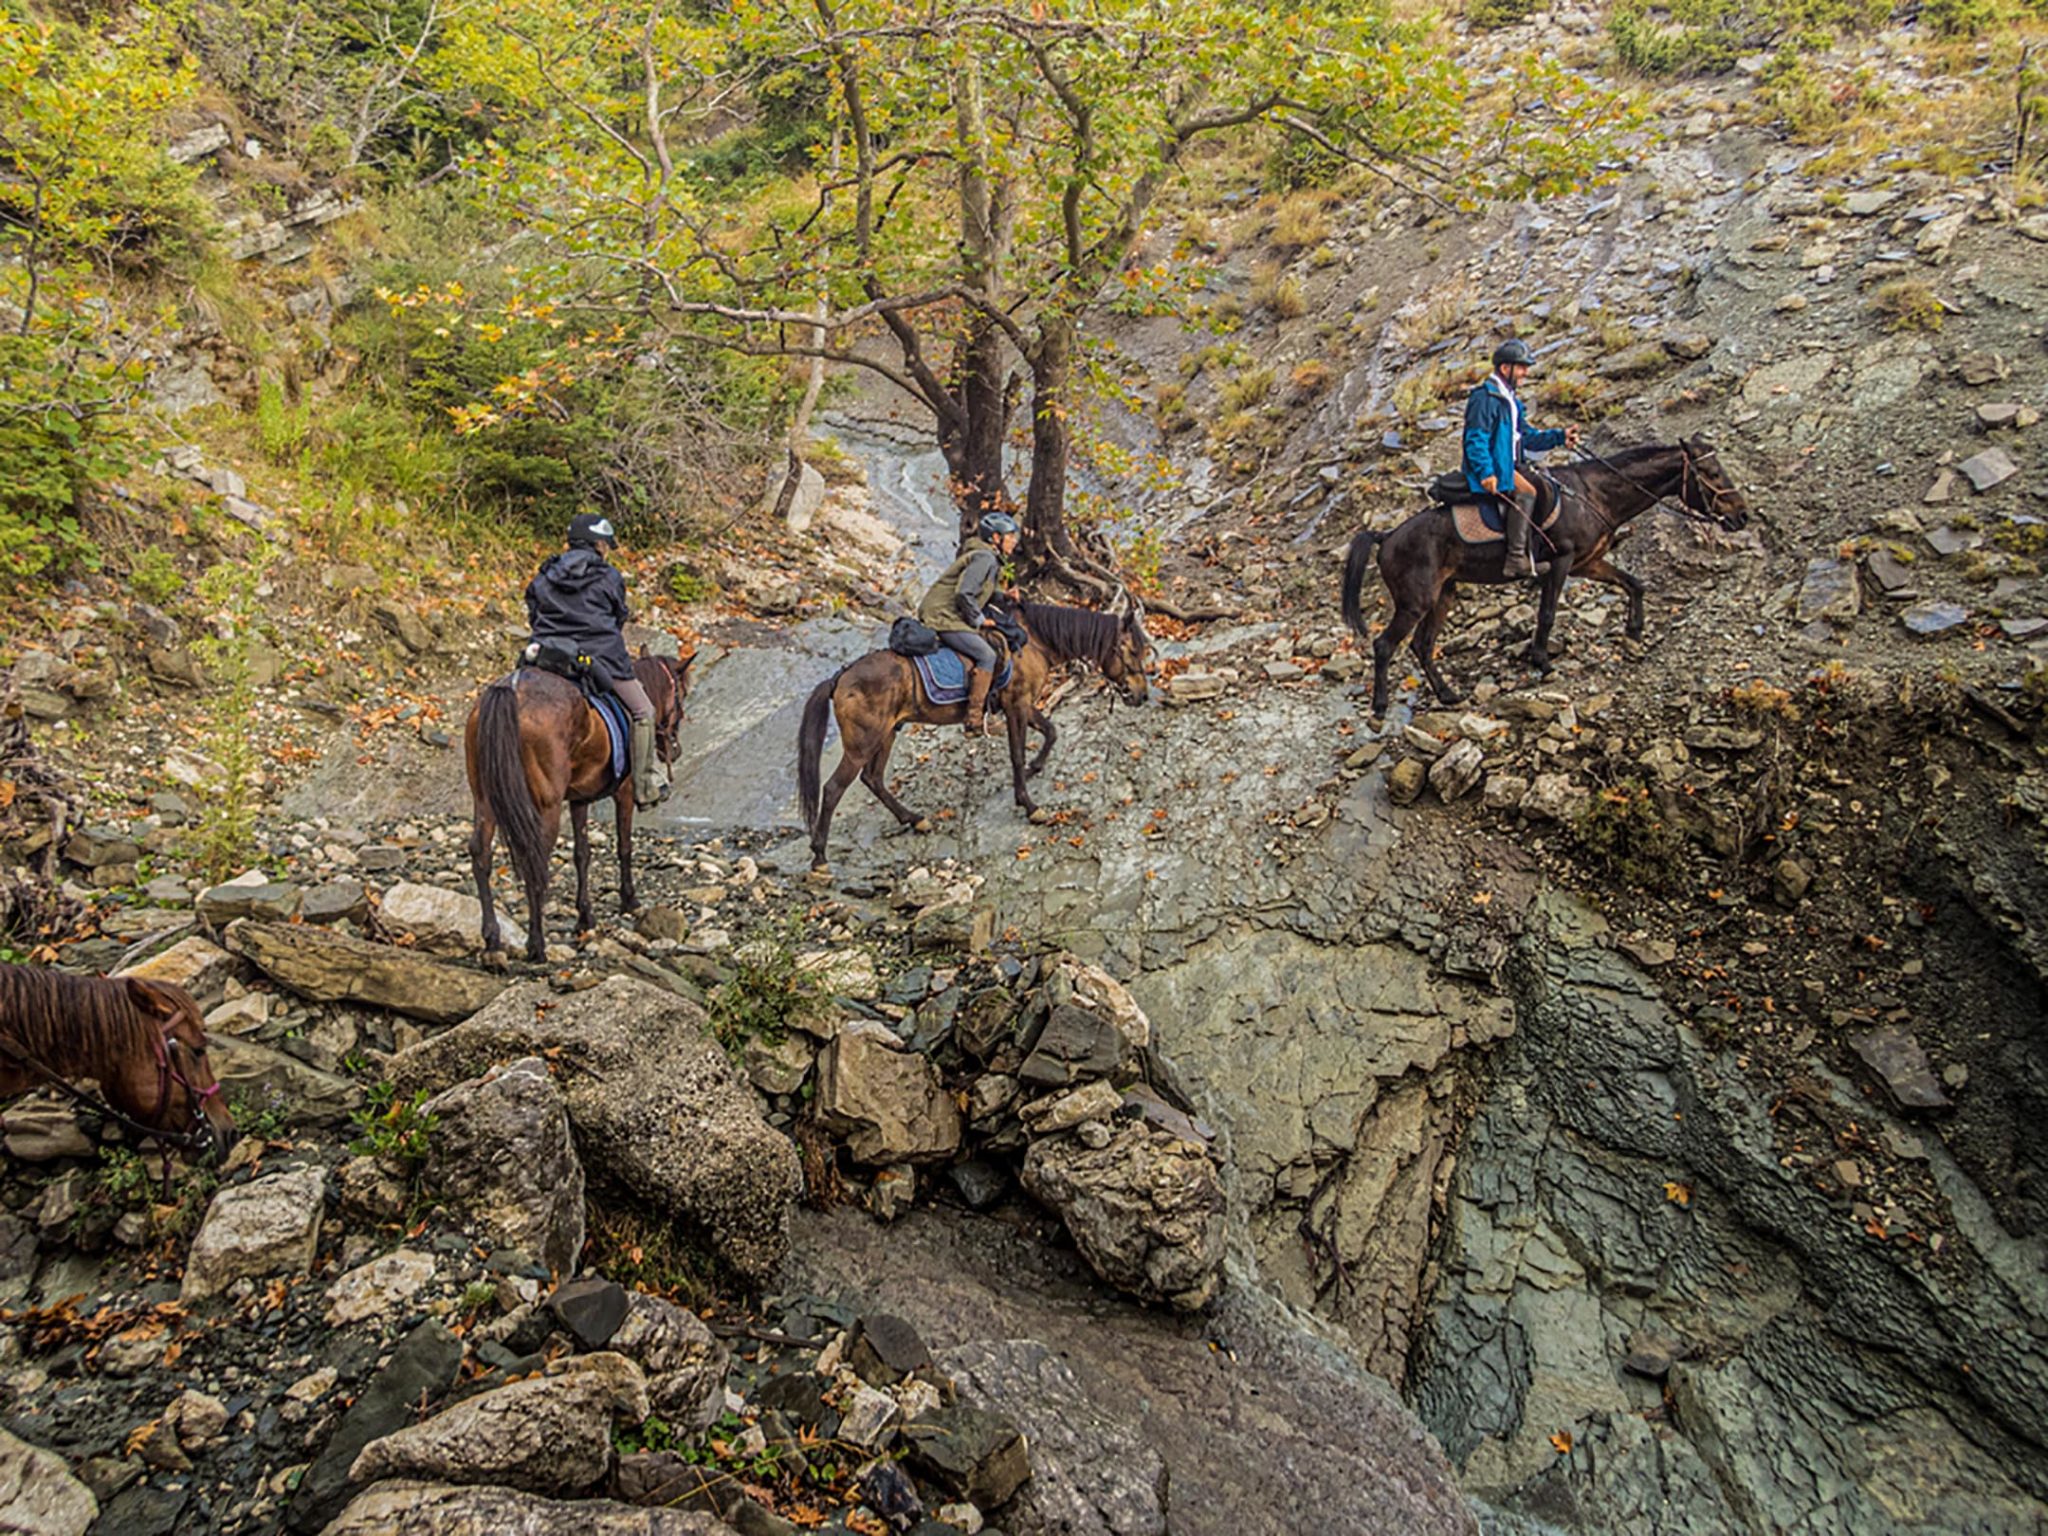 Horse Riding Holidays Albania